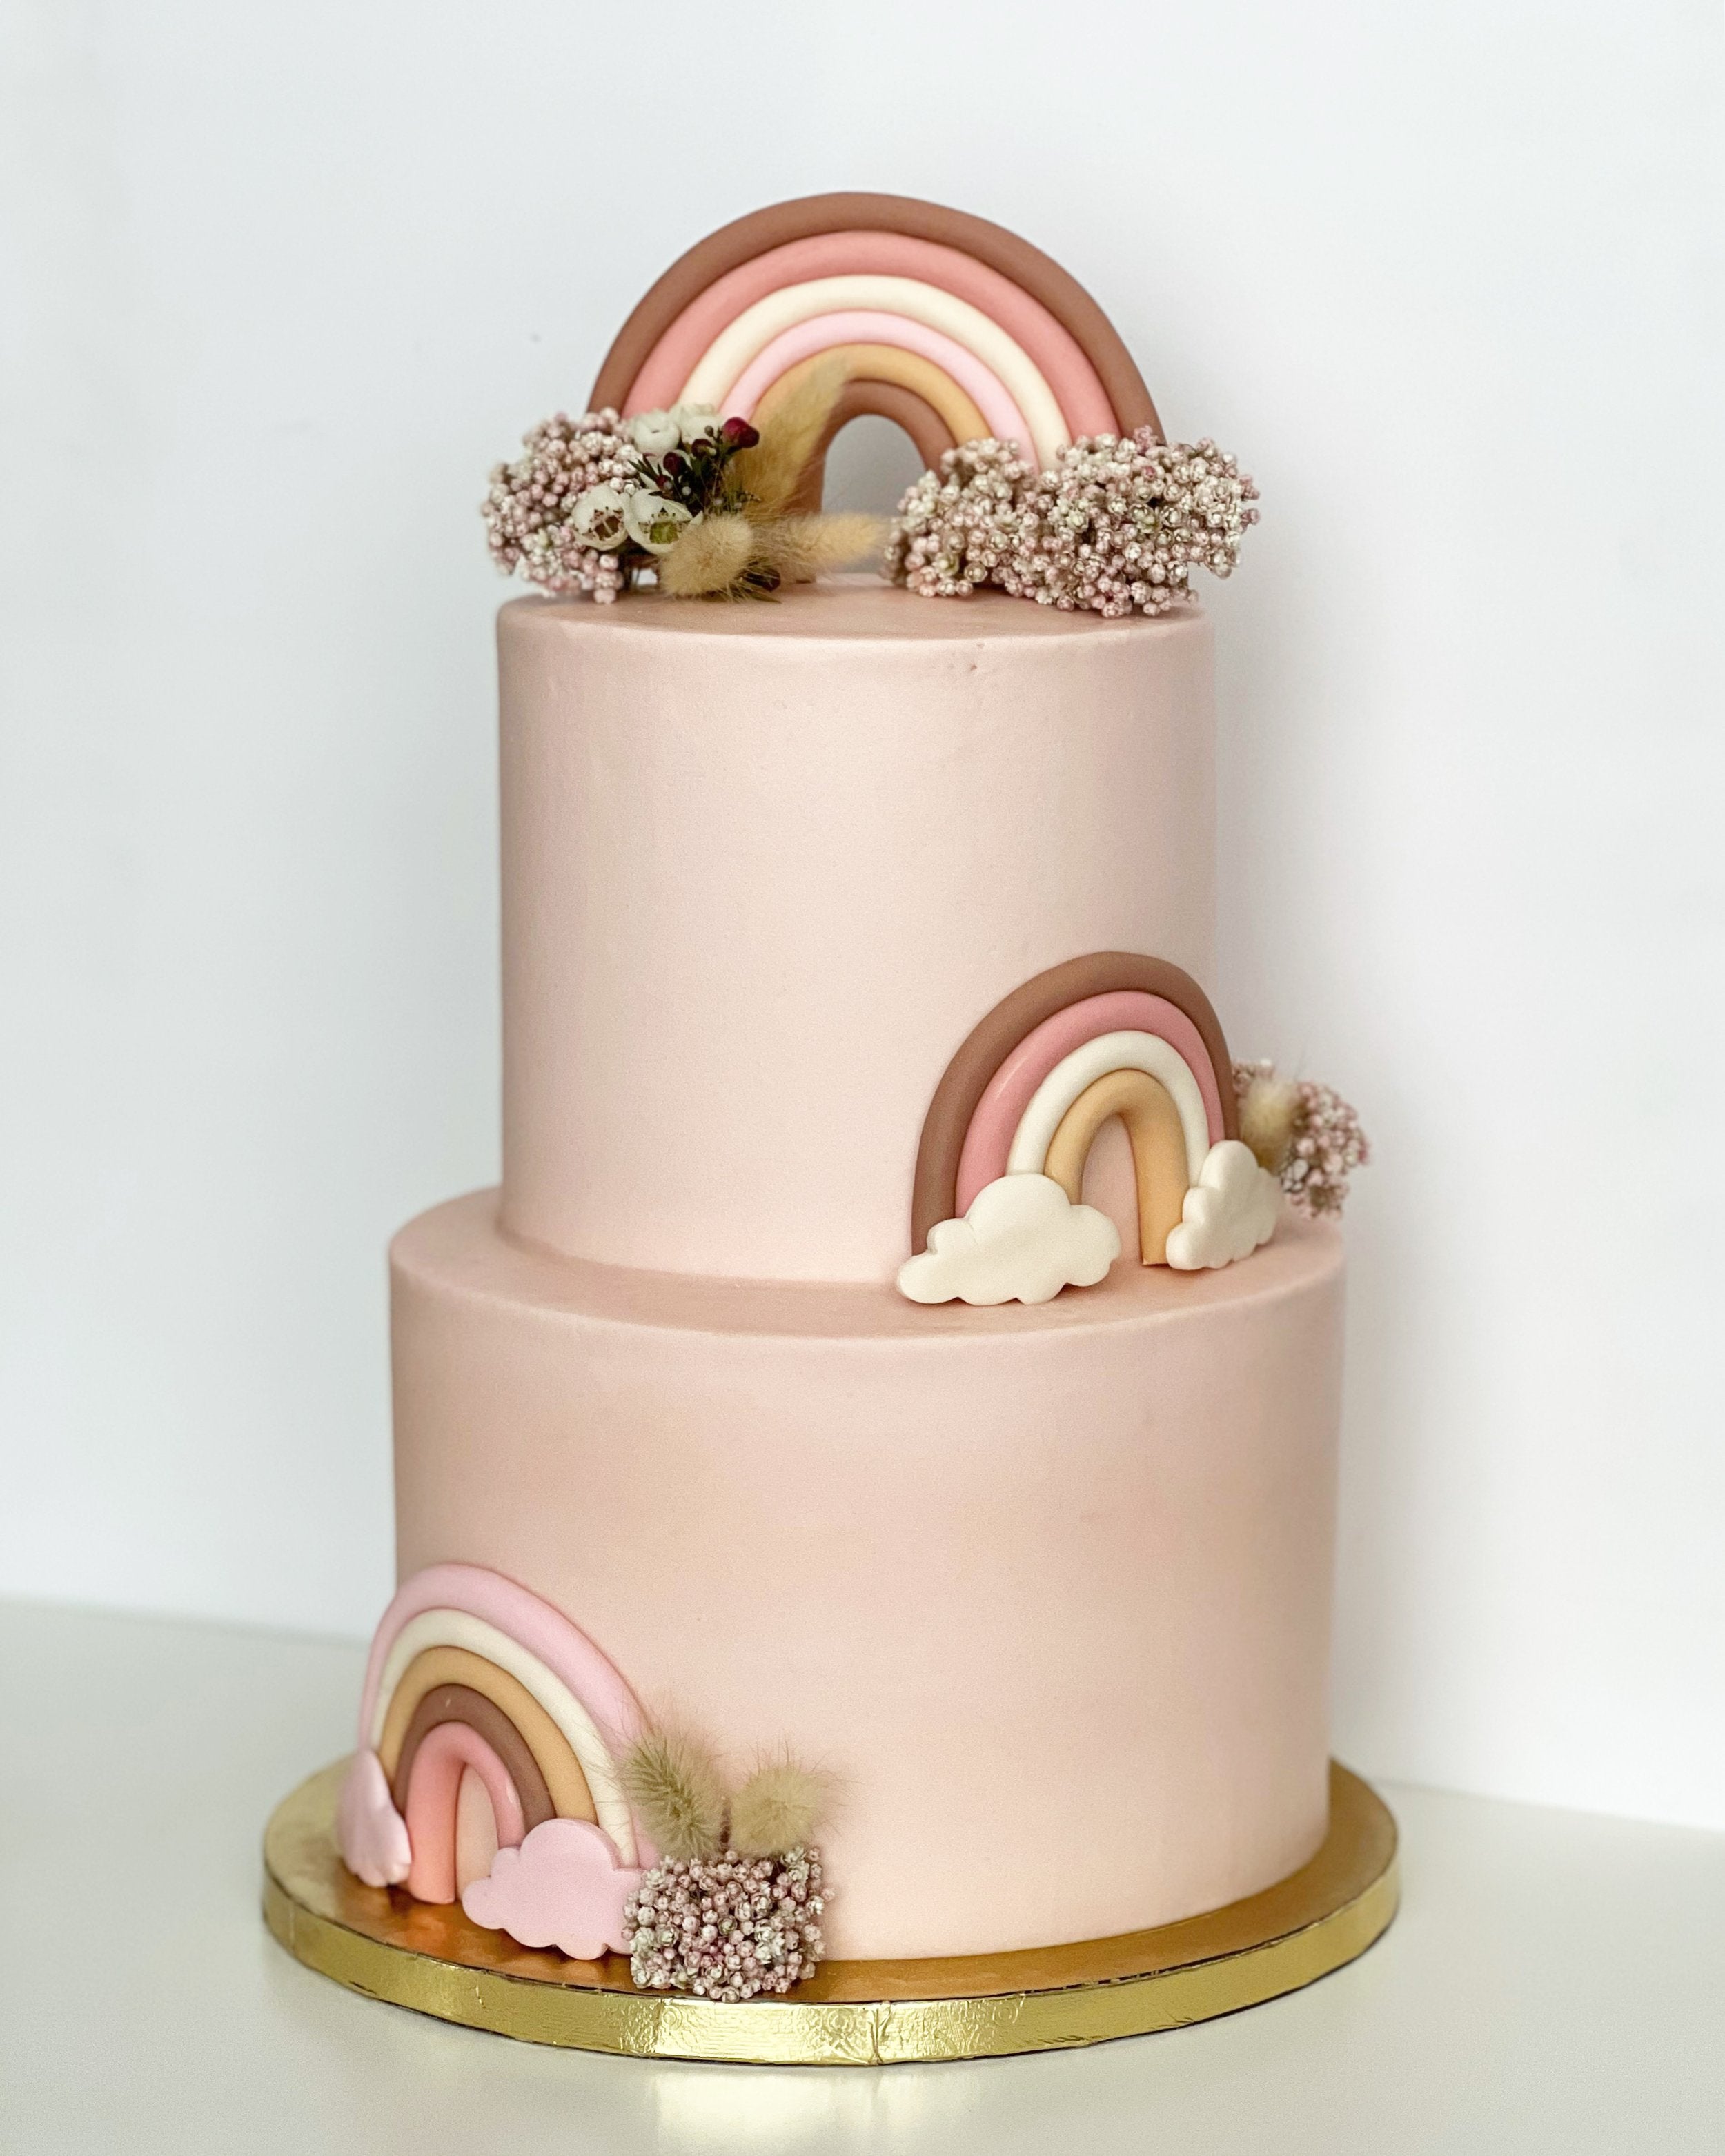 Rainbow Cake - Best Desserts